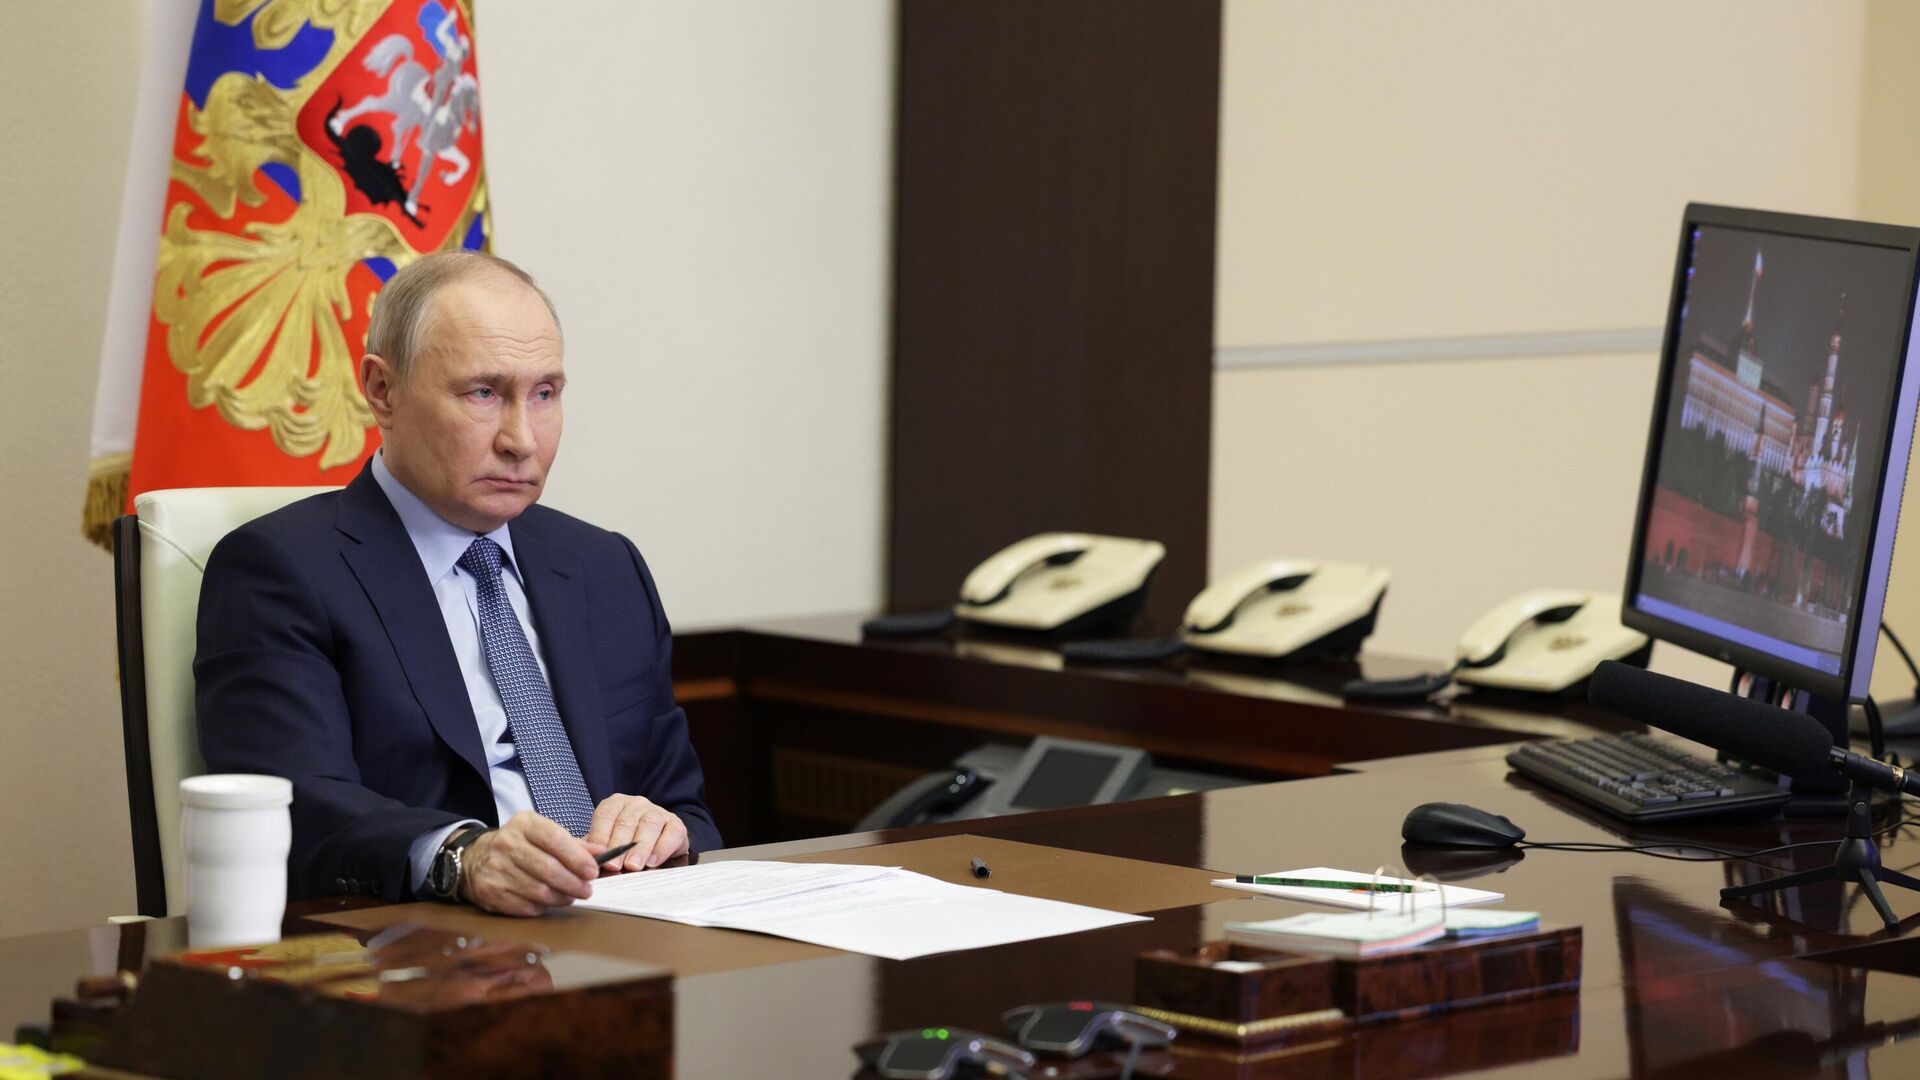 Путин по видеосвязи пообщается с Чибисом, который вышел на работу после ранения